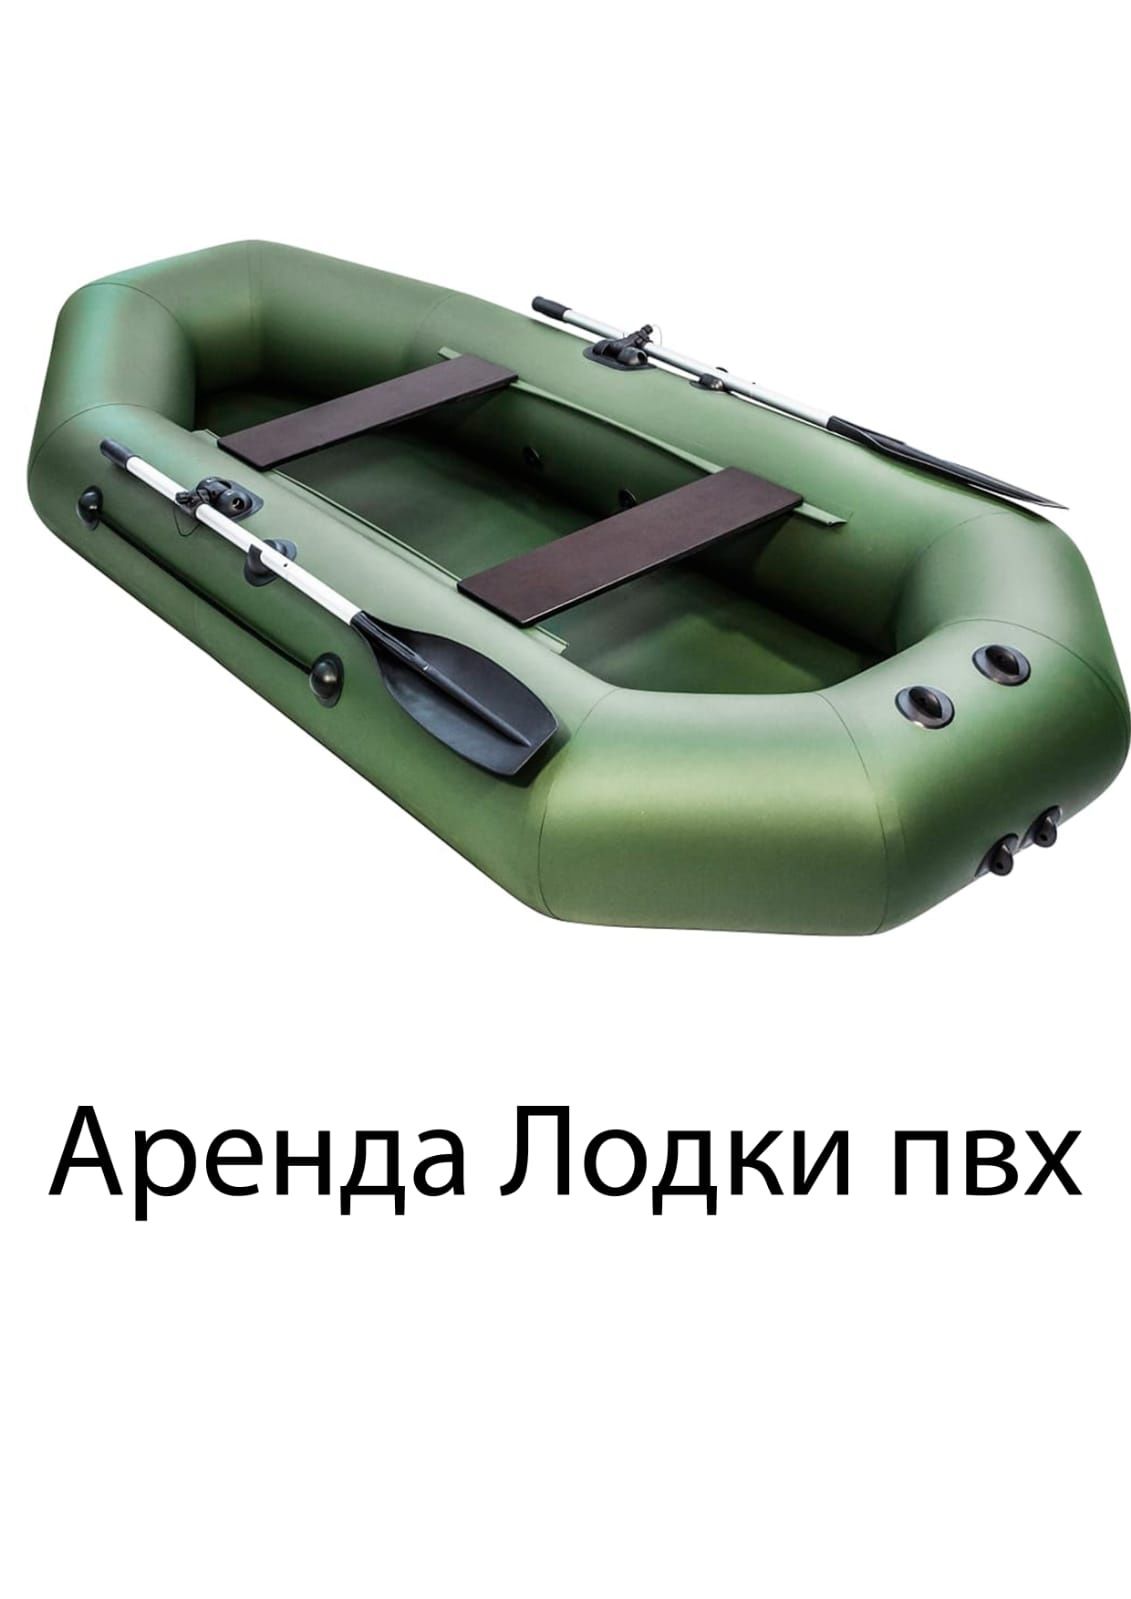 Лодки пвх российского производства. Большой выбор моделей